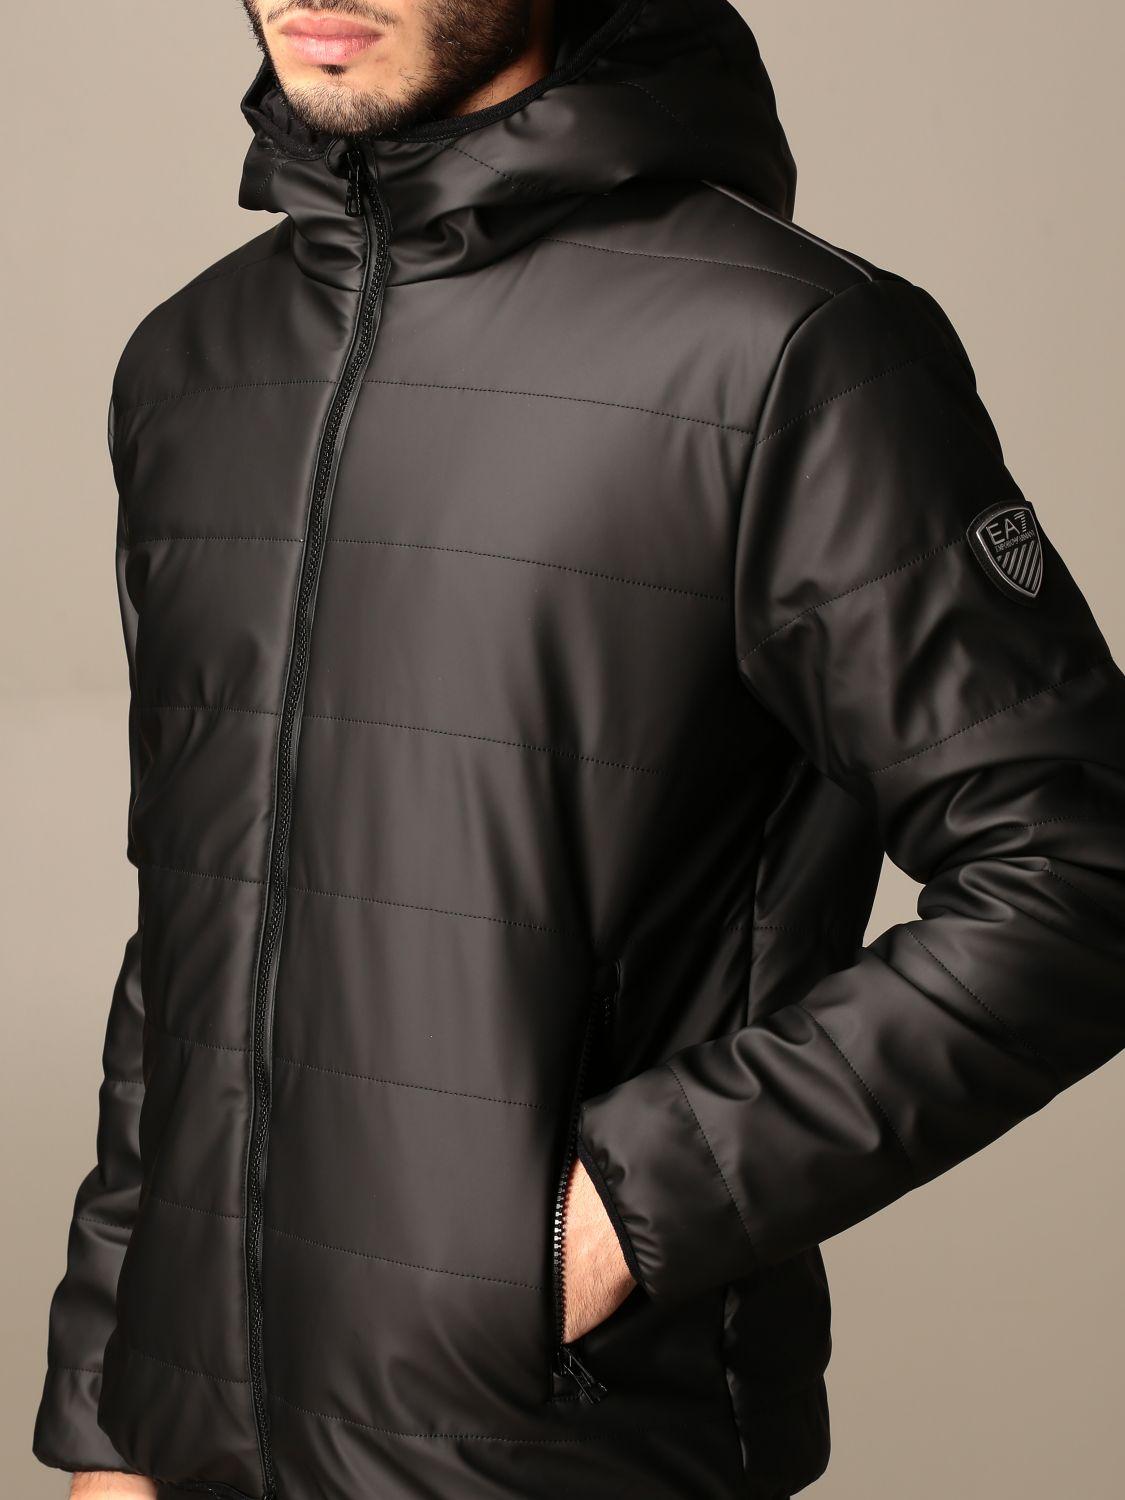 EA7 Jacket in Black for Men - Lyst